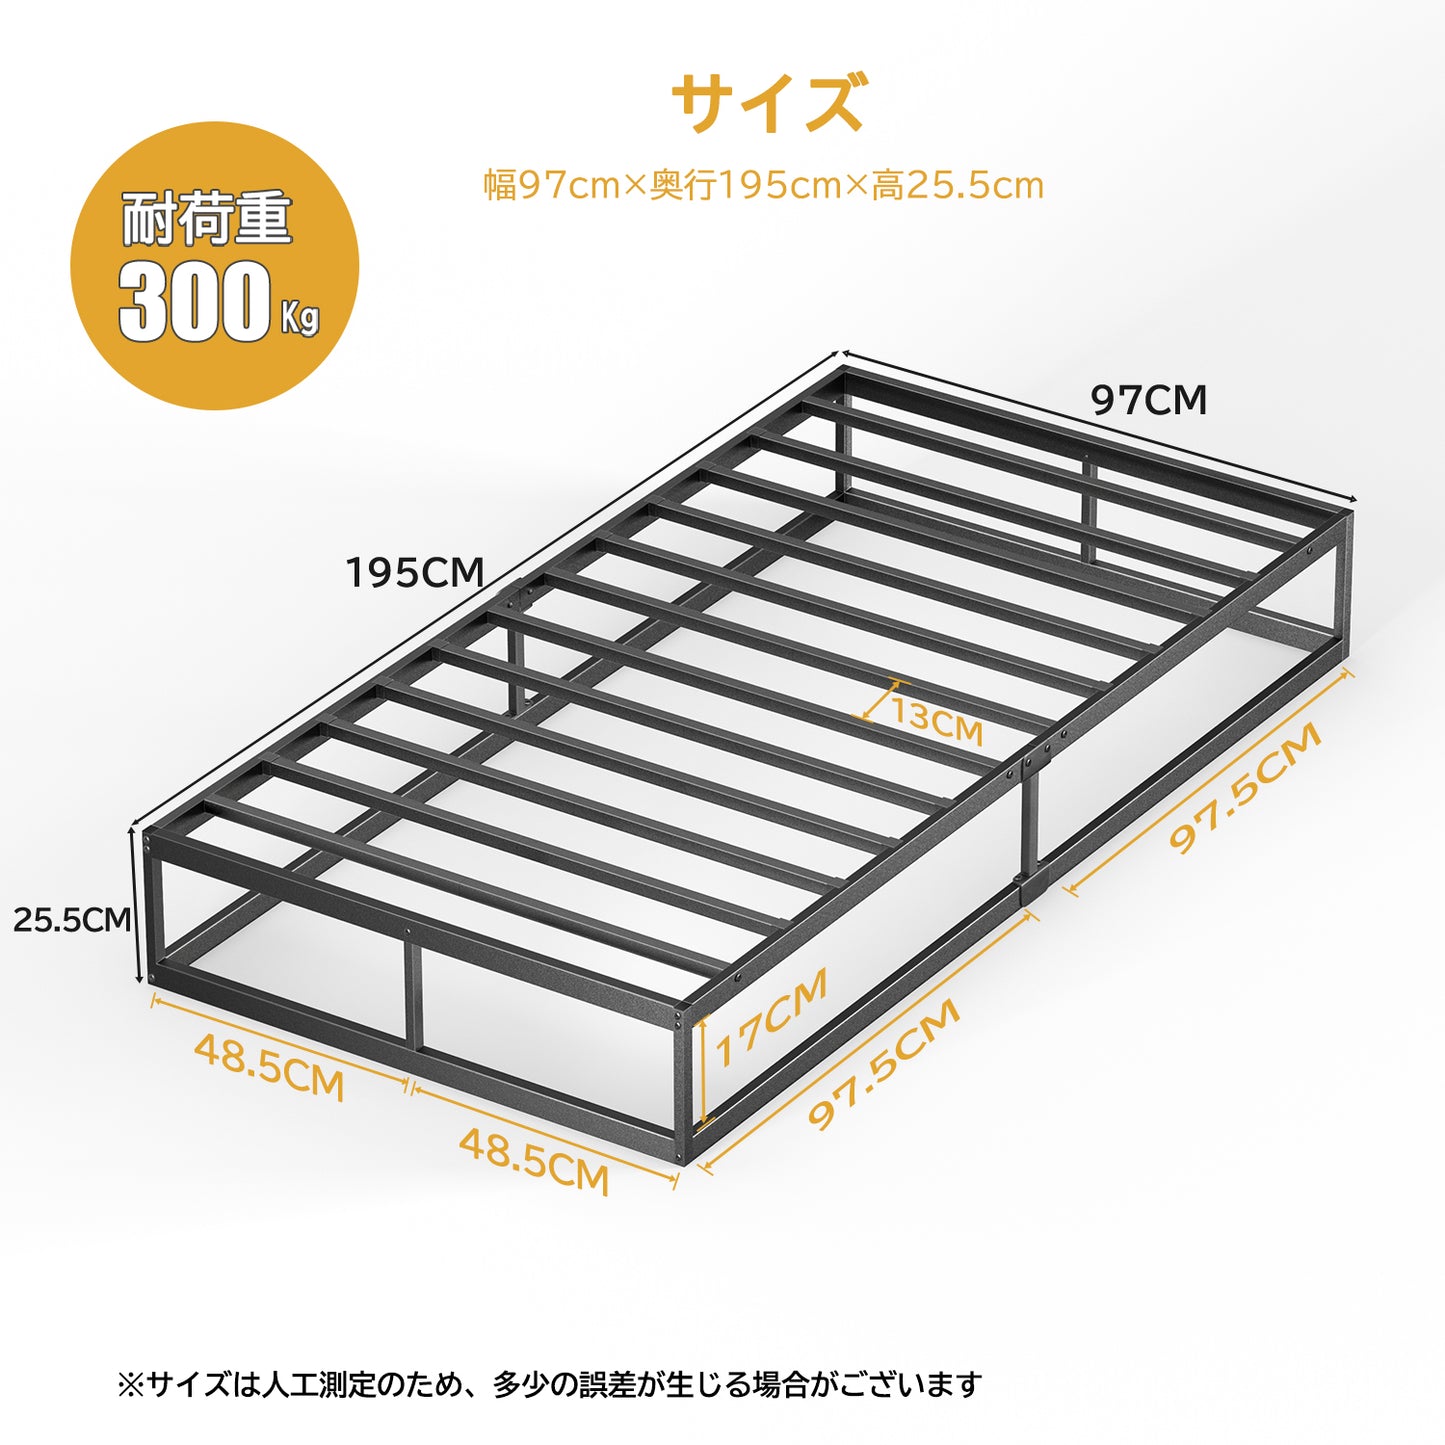 [耐荷重300kg]BD03ベッドフレーム シングル パイプベッドホワイト 静音 シングルベッド すのこベッド下収納 耐久性 通気性 組立簡単 工具付き シングルメタルベッド